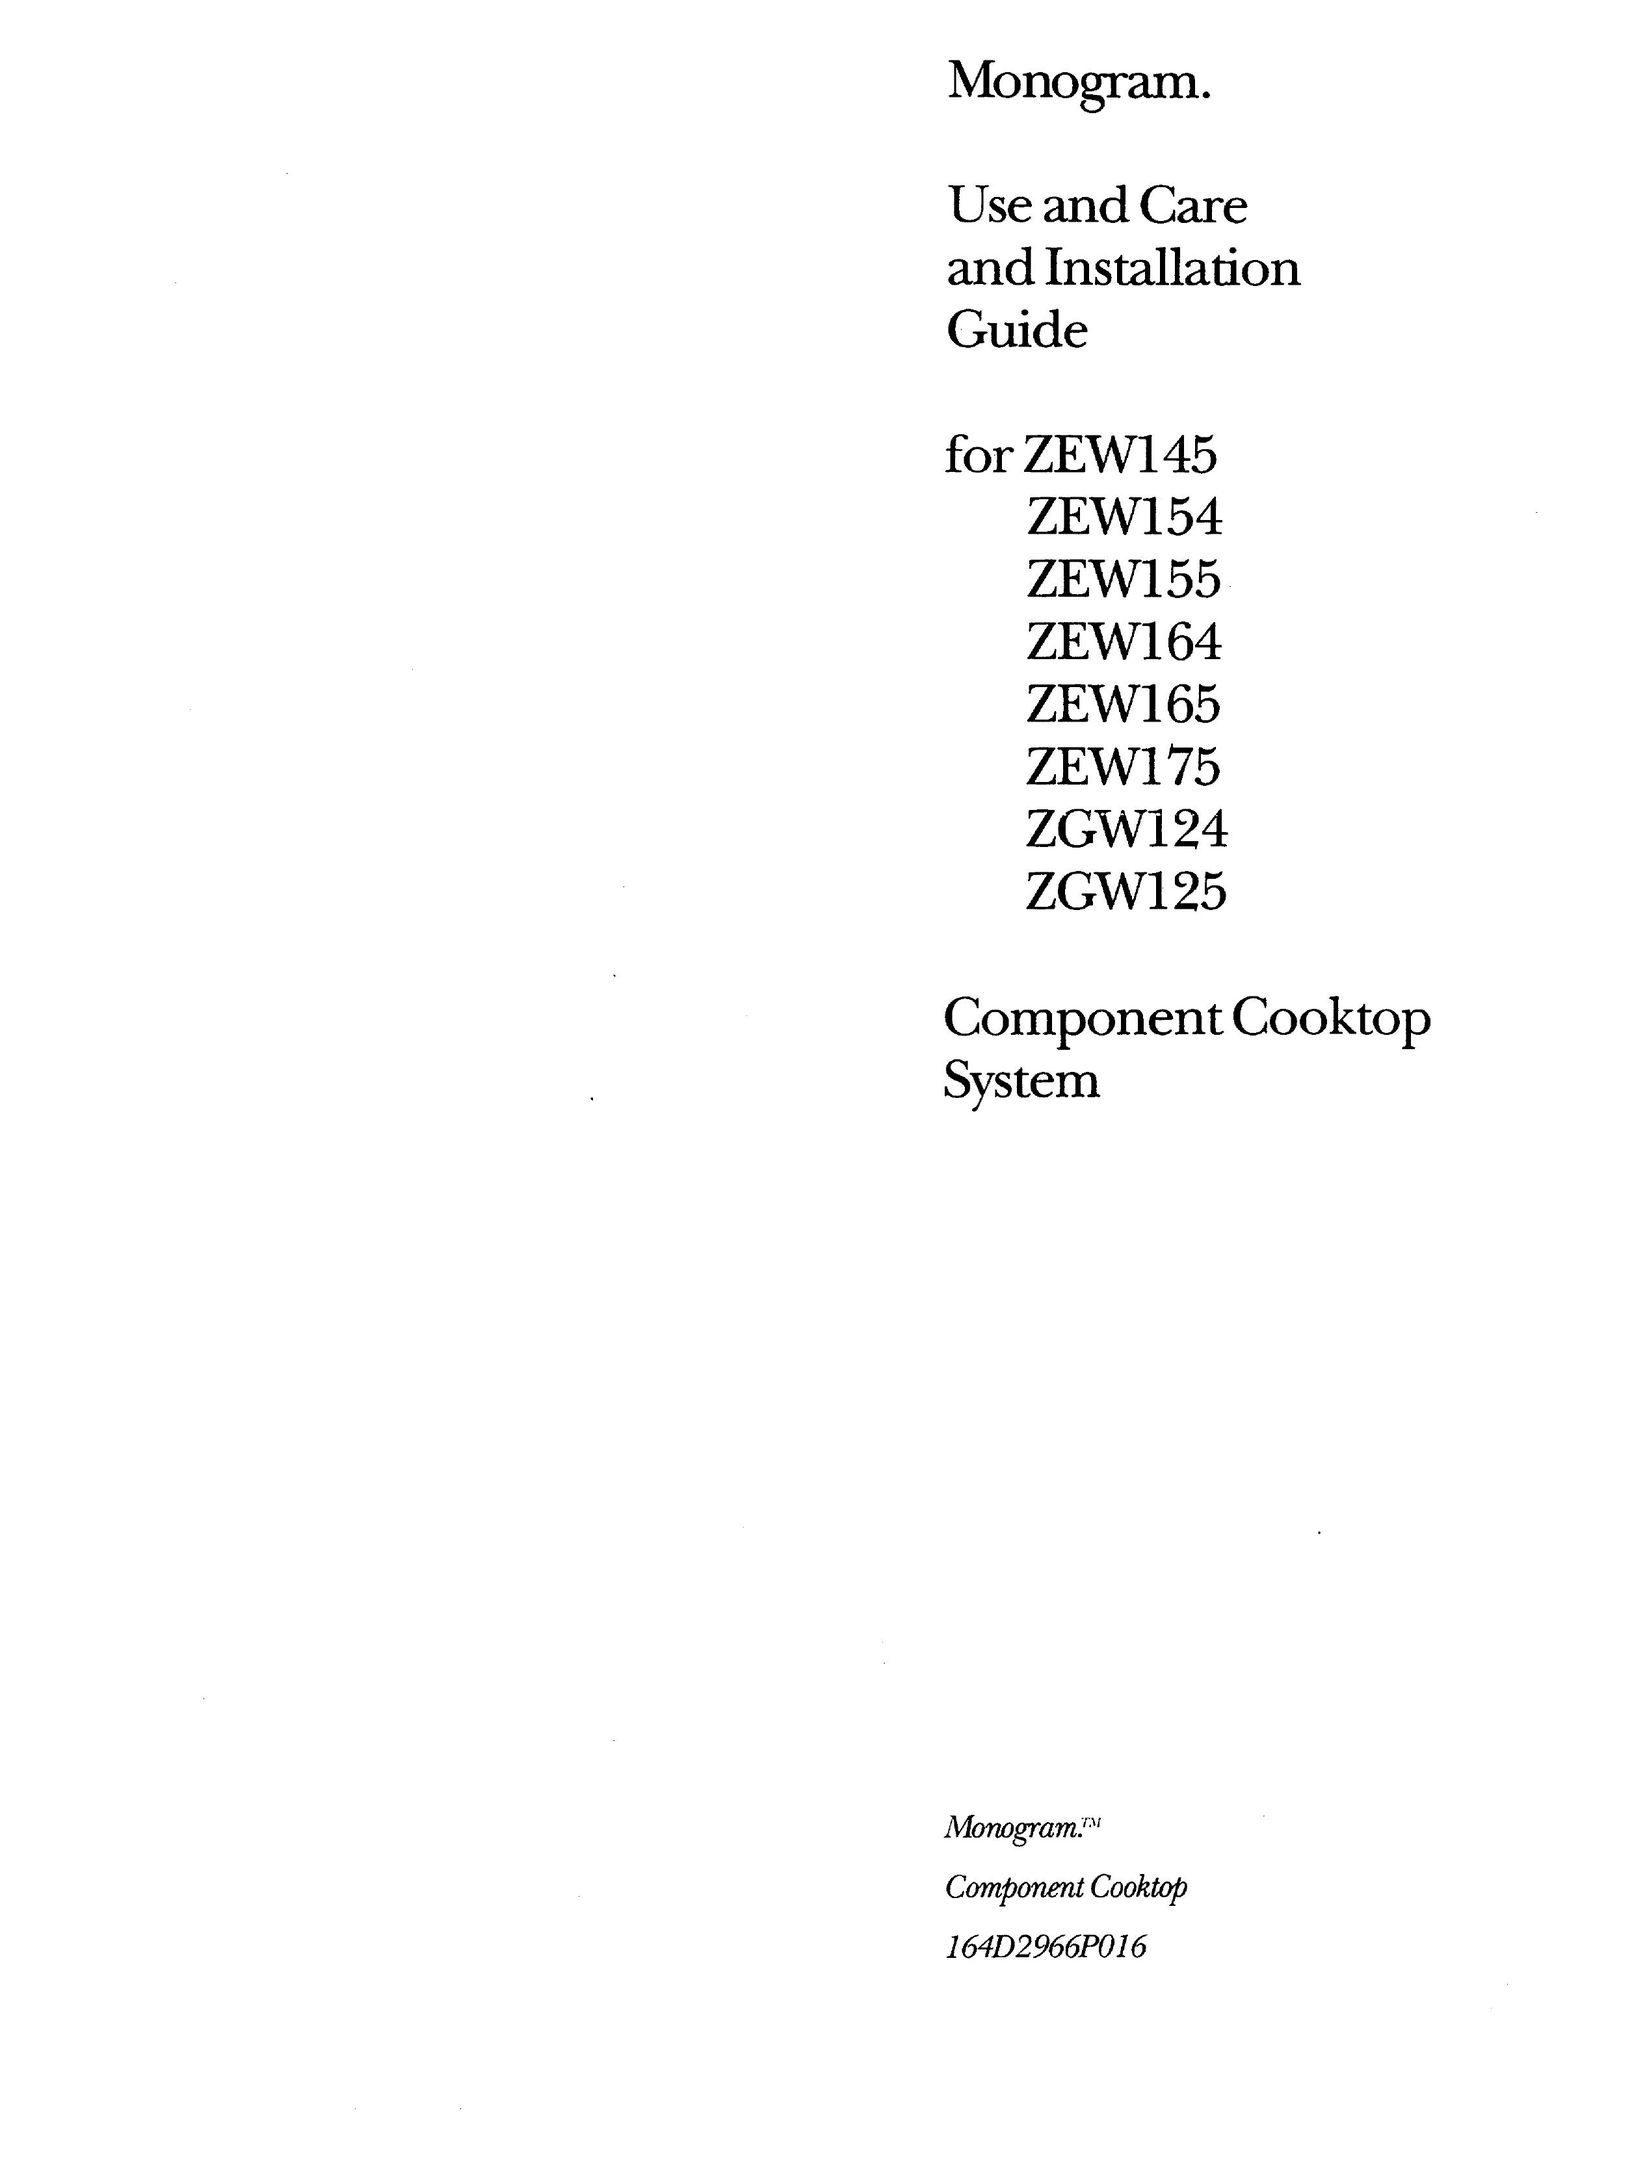 GE Monogram ZEW145 Cooktop User Manual